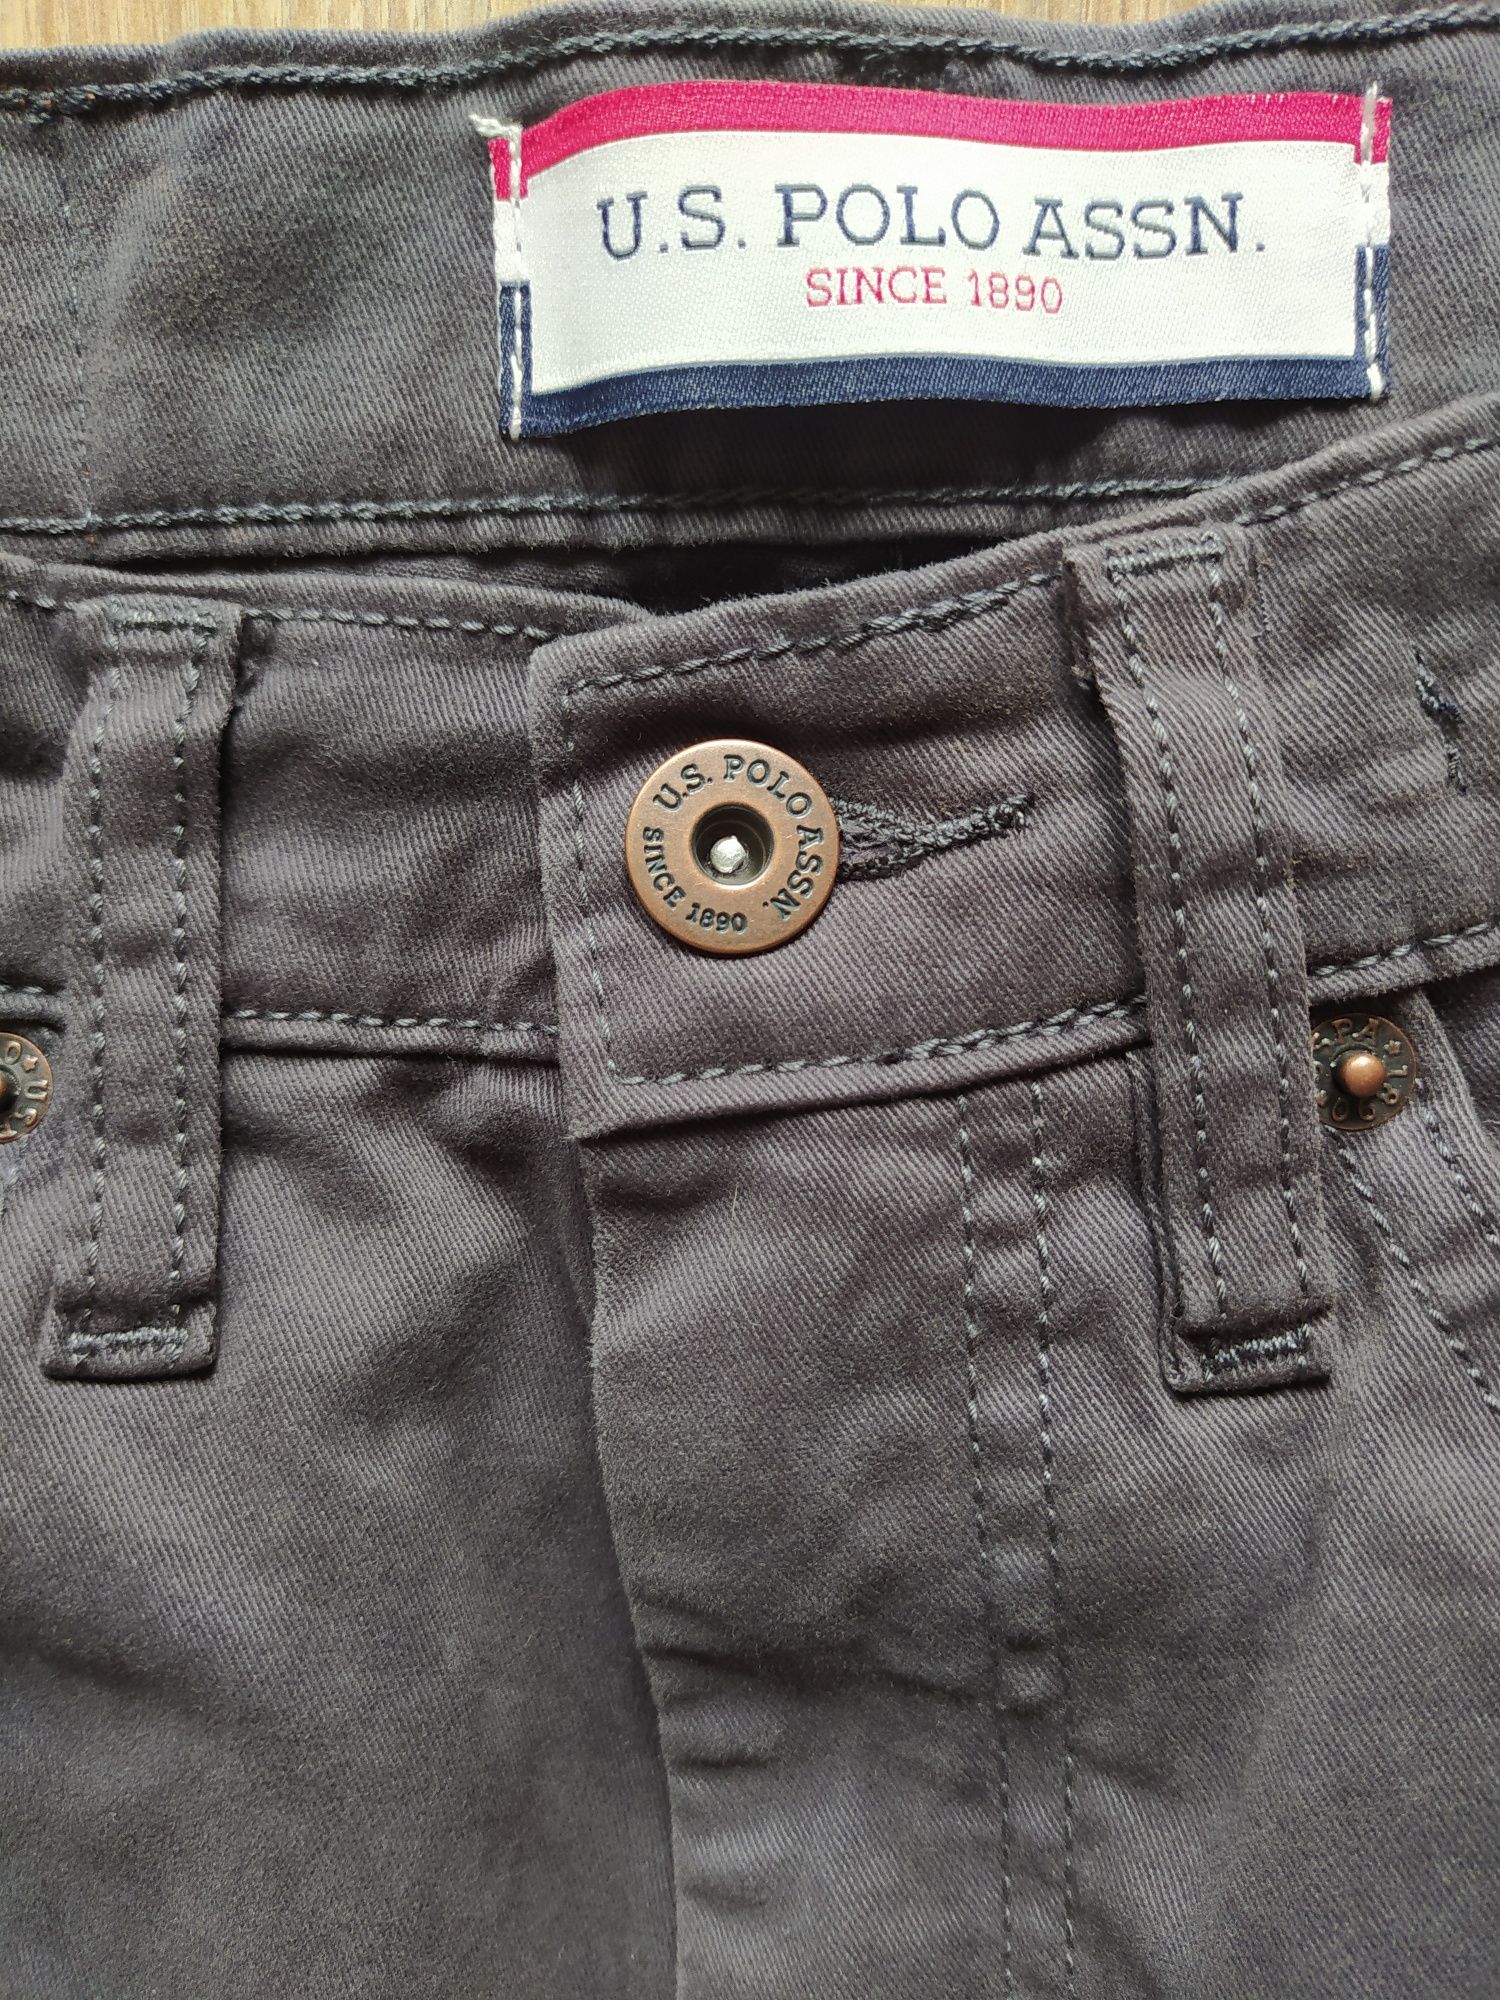 U. S. Polo Assn. - spodnie męskie, rozmiar 30